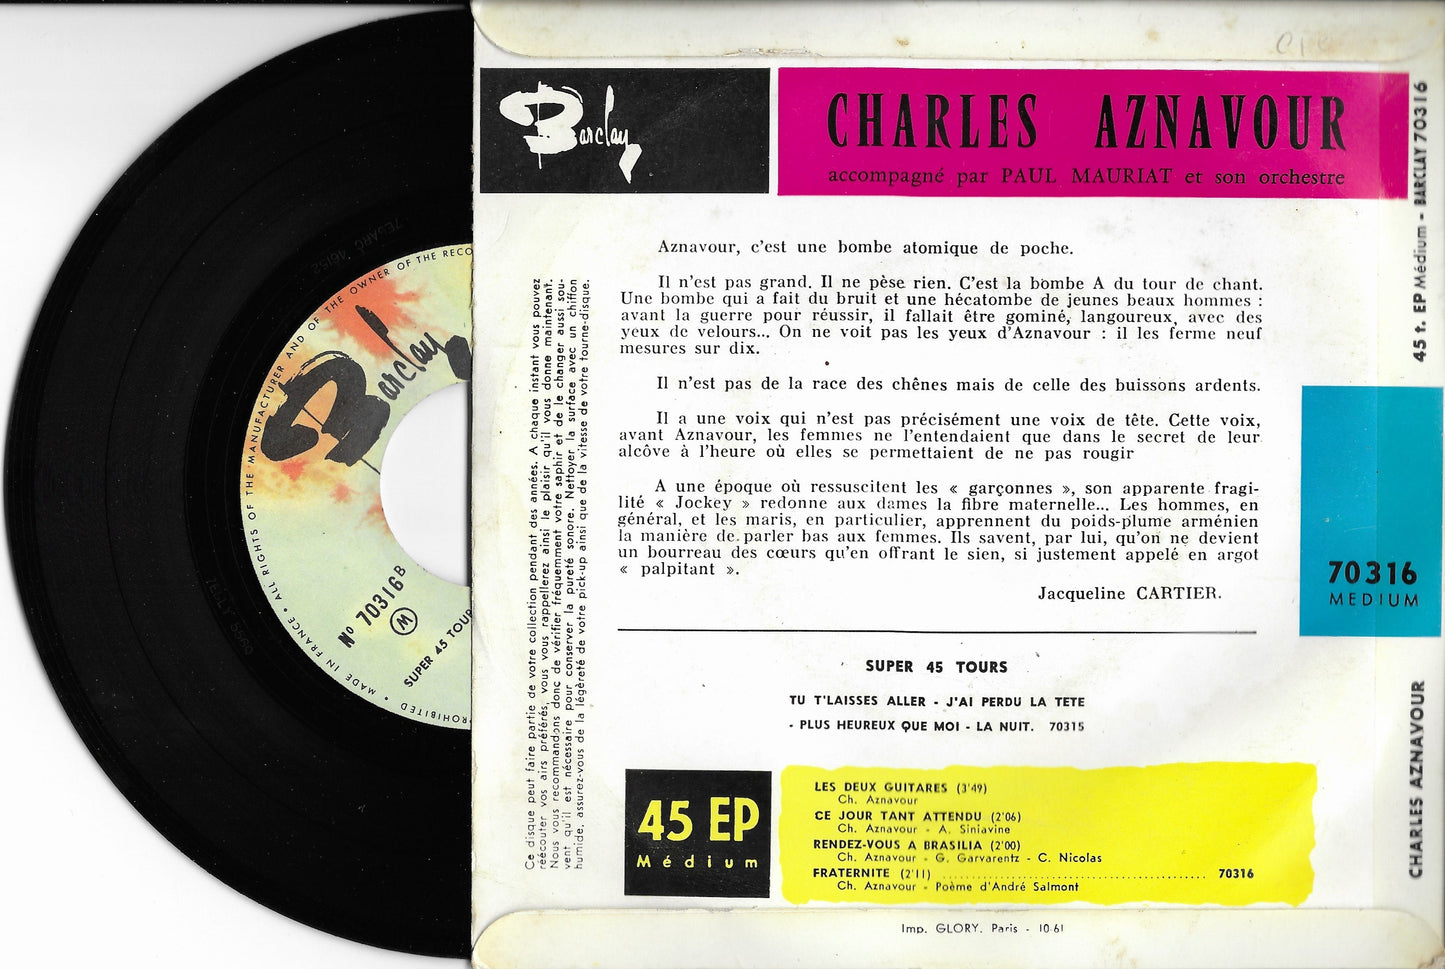 CHARLES AZNAVOUR -  Les Deux Guitares